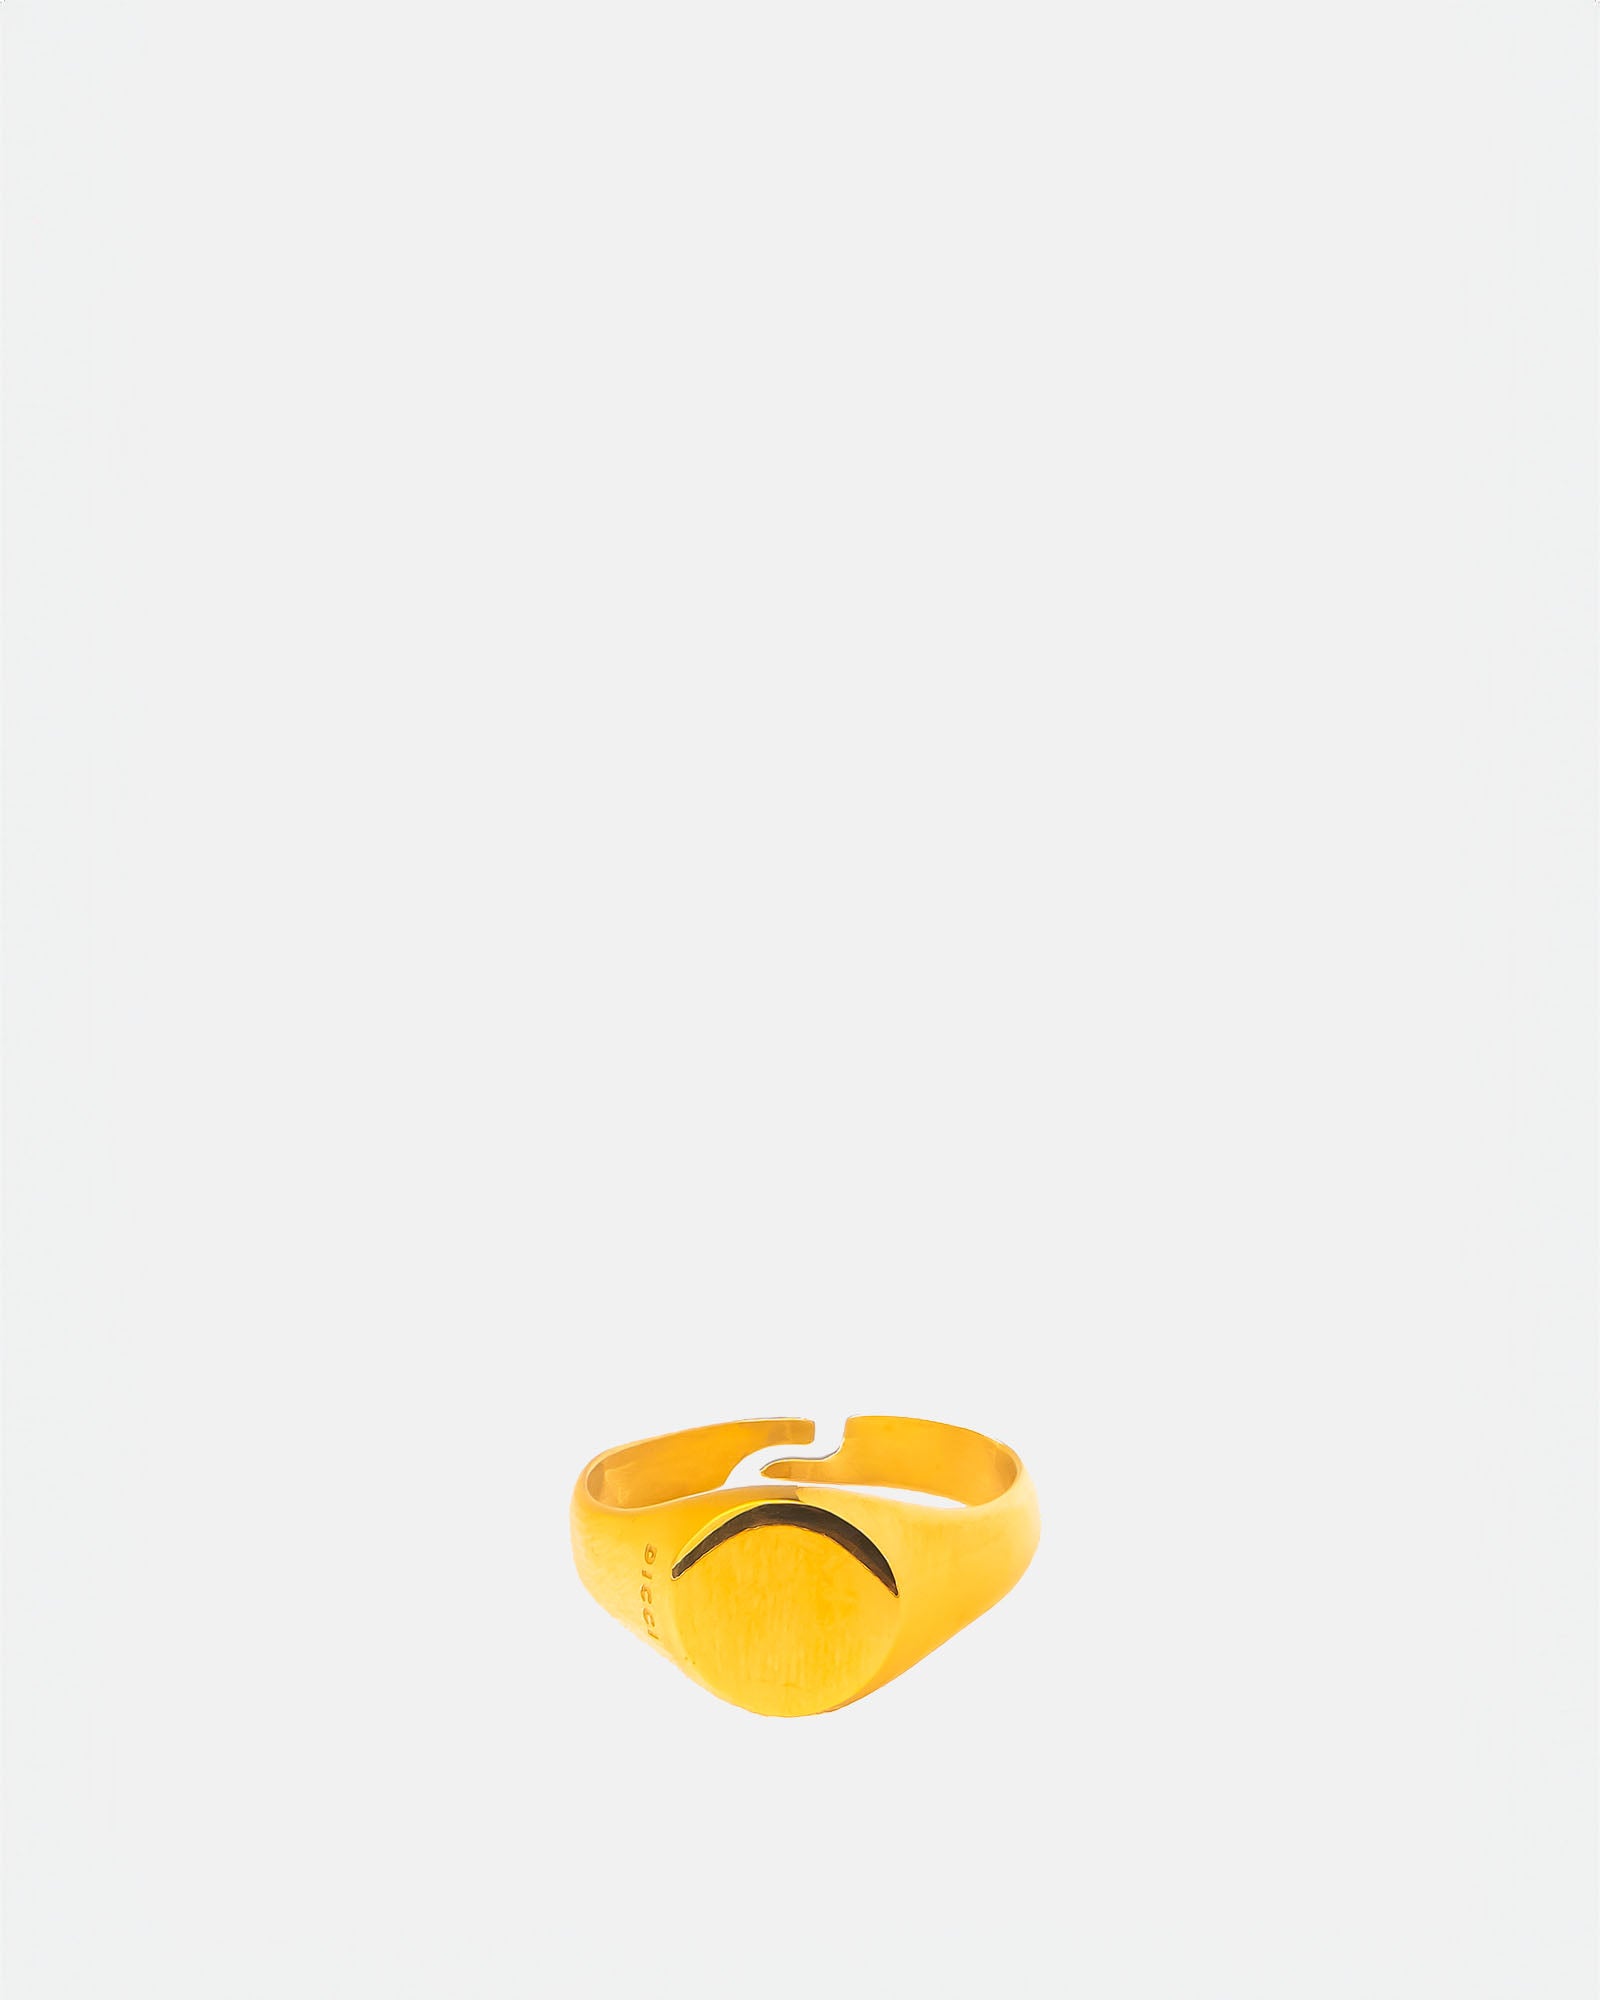 Stainless Steel Golden Ring Signet